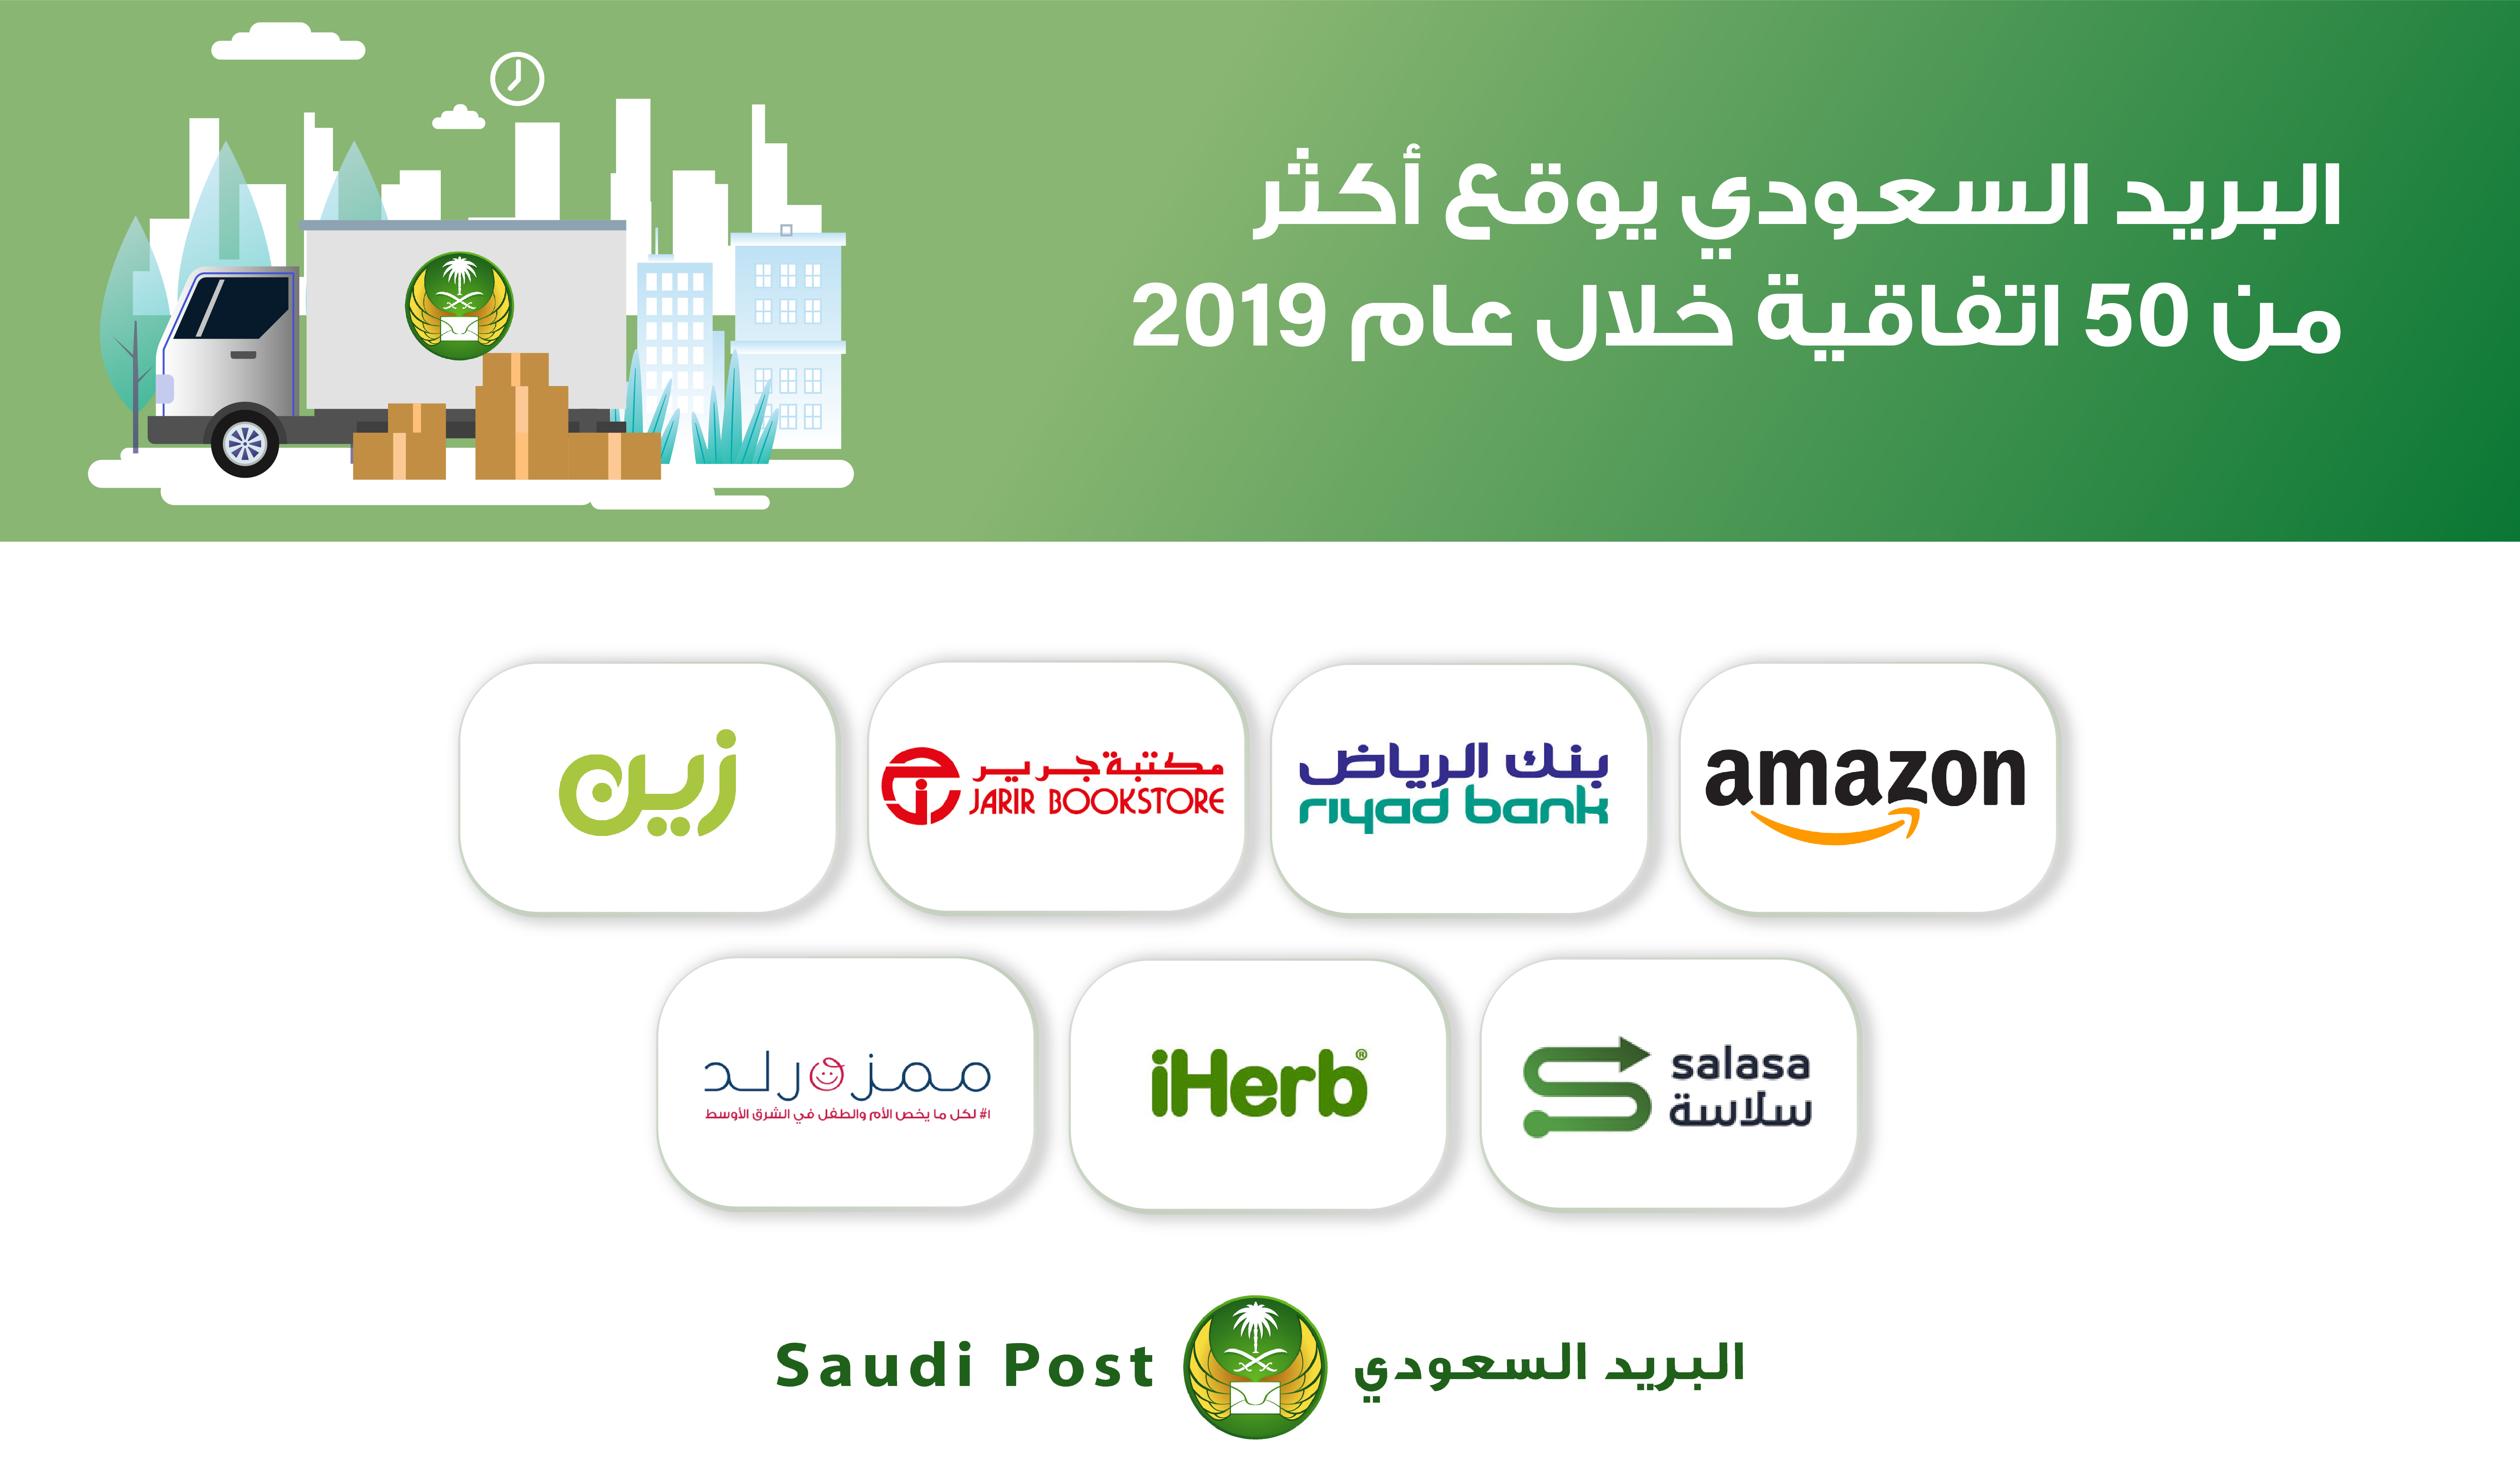 البريد السعودي يوقع أكثر من 50 اتفاقية خلال عام 2019